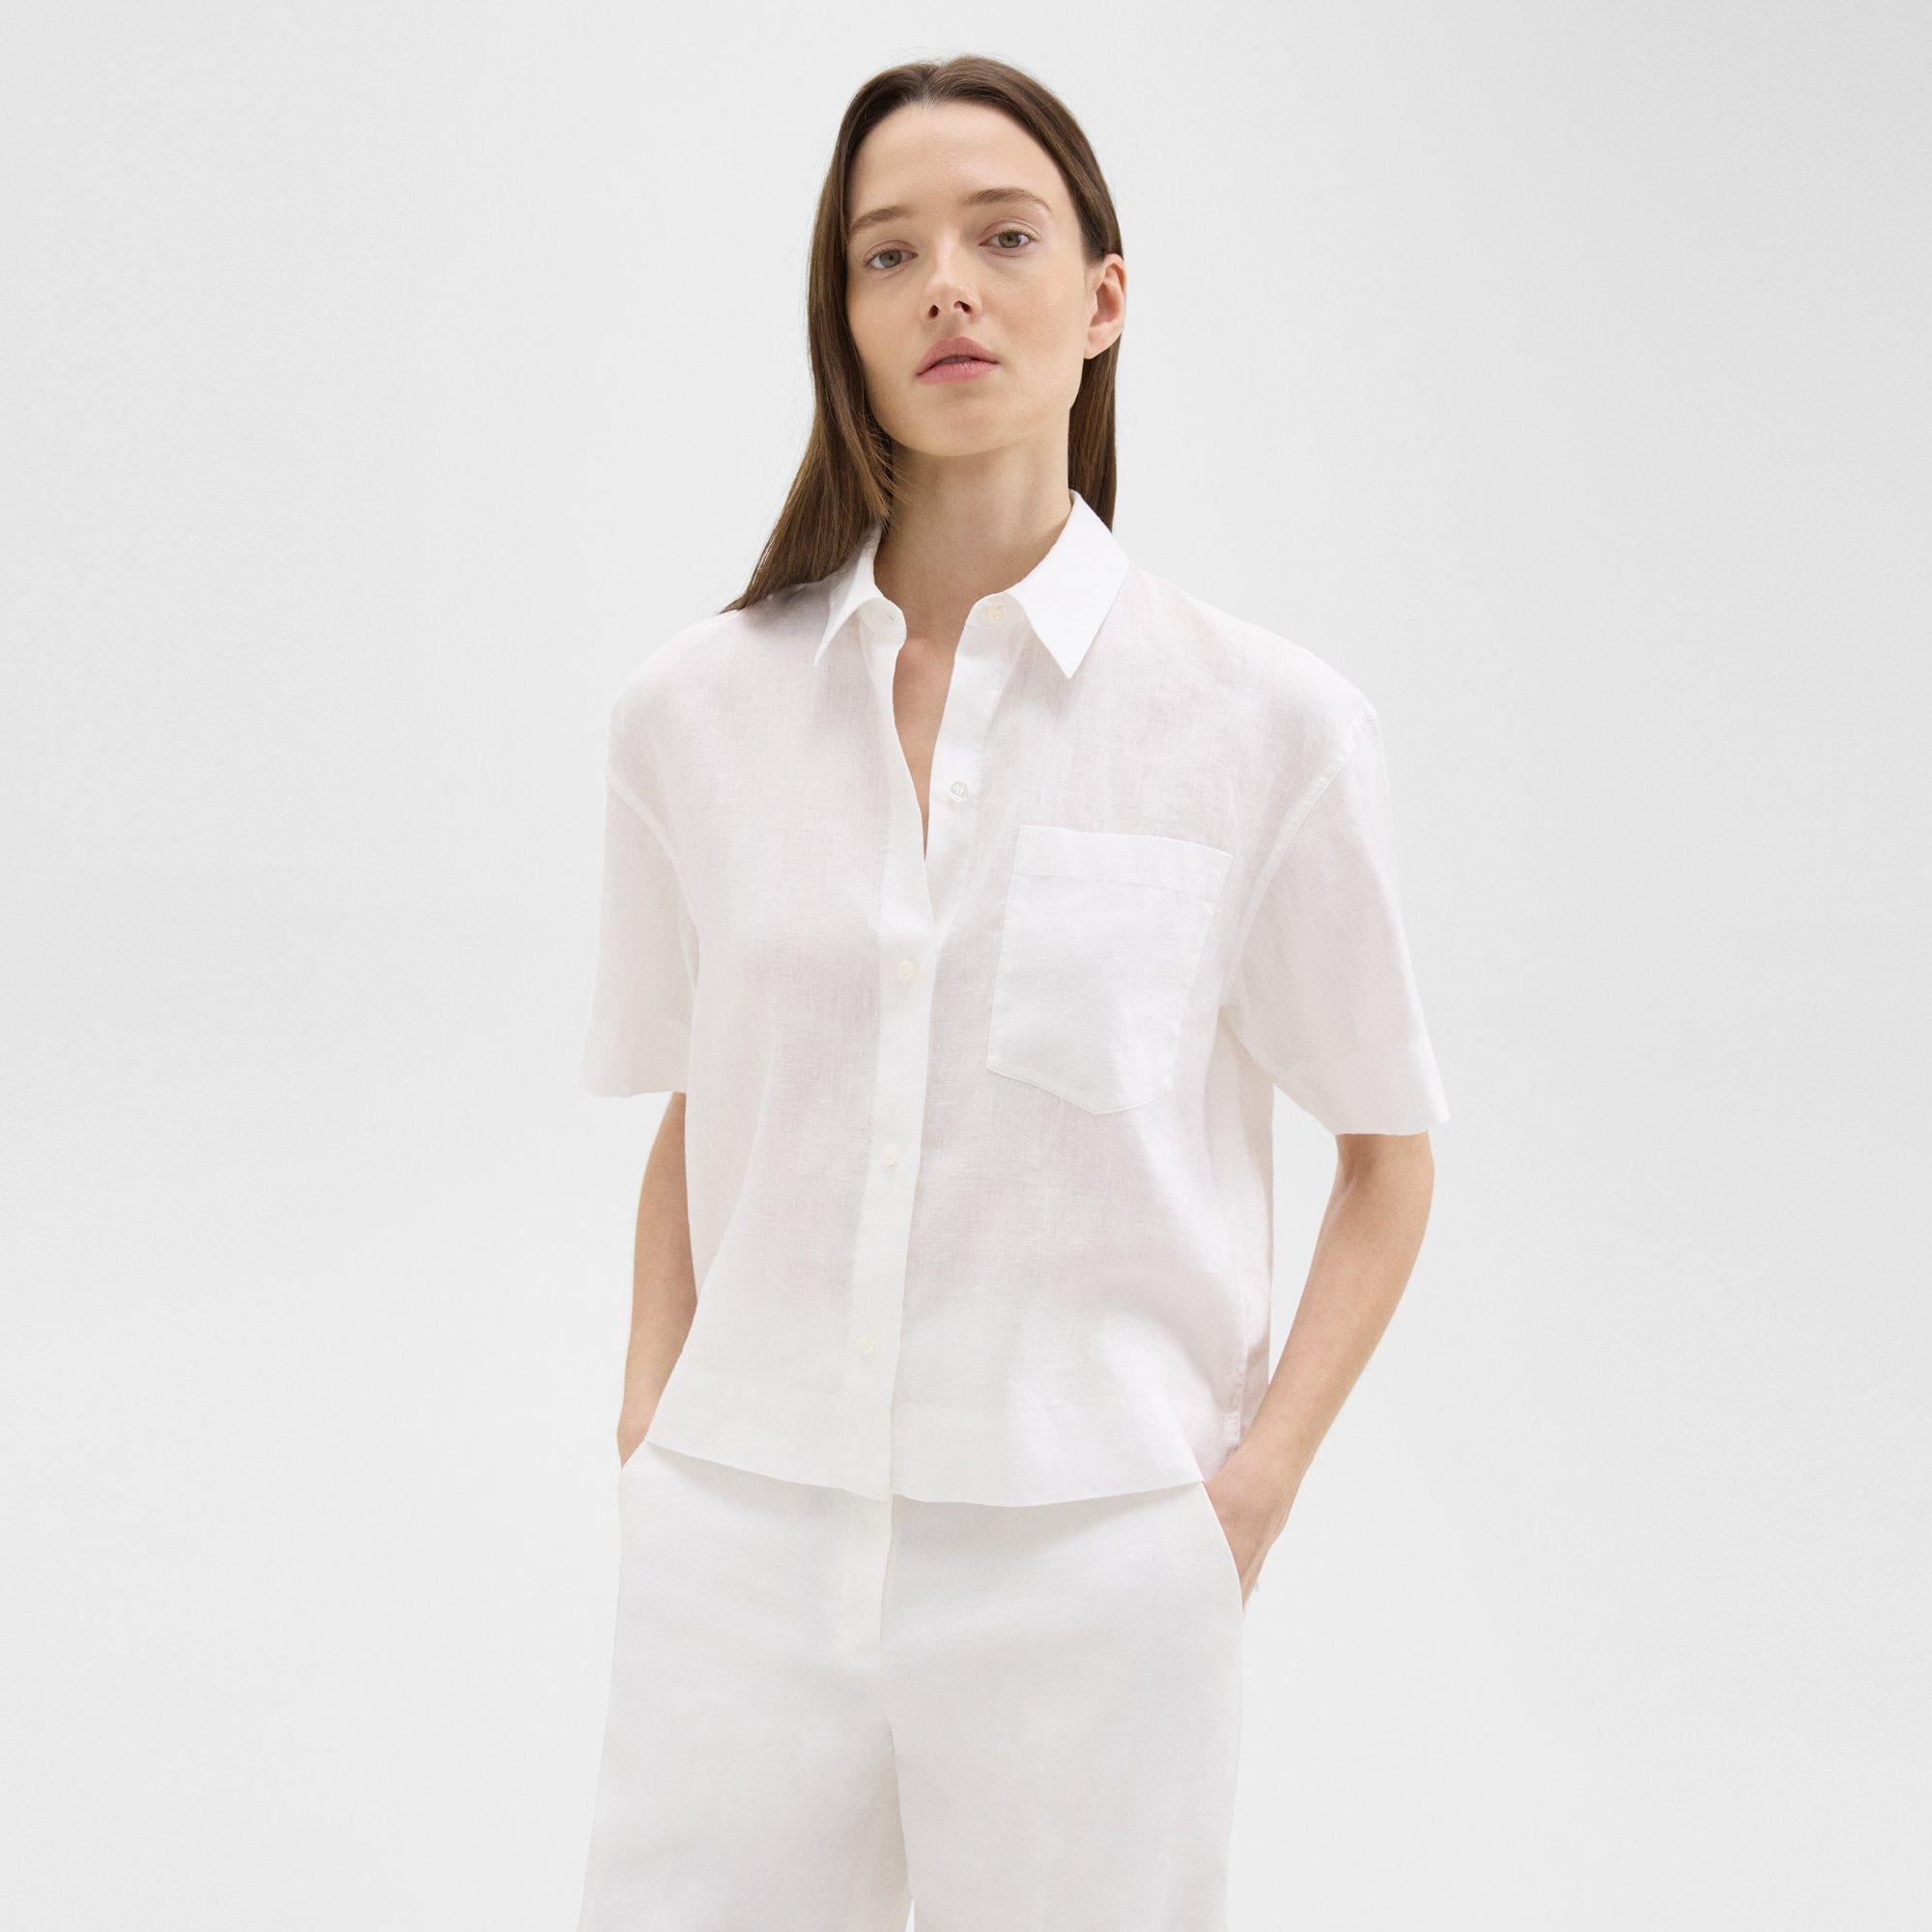 띠어리 Theory Short-Sleeve Shirt in Relaxed Linen,WHITE